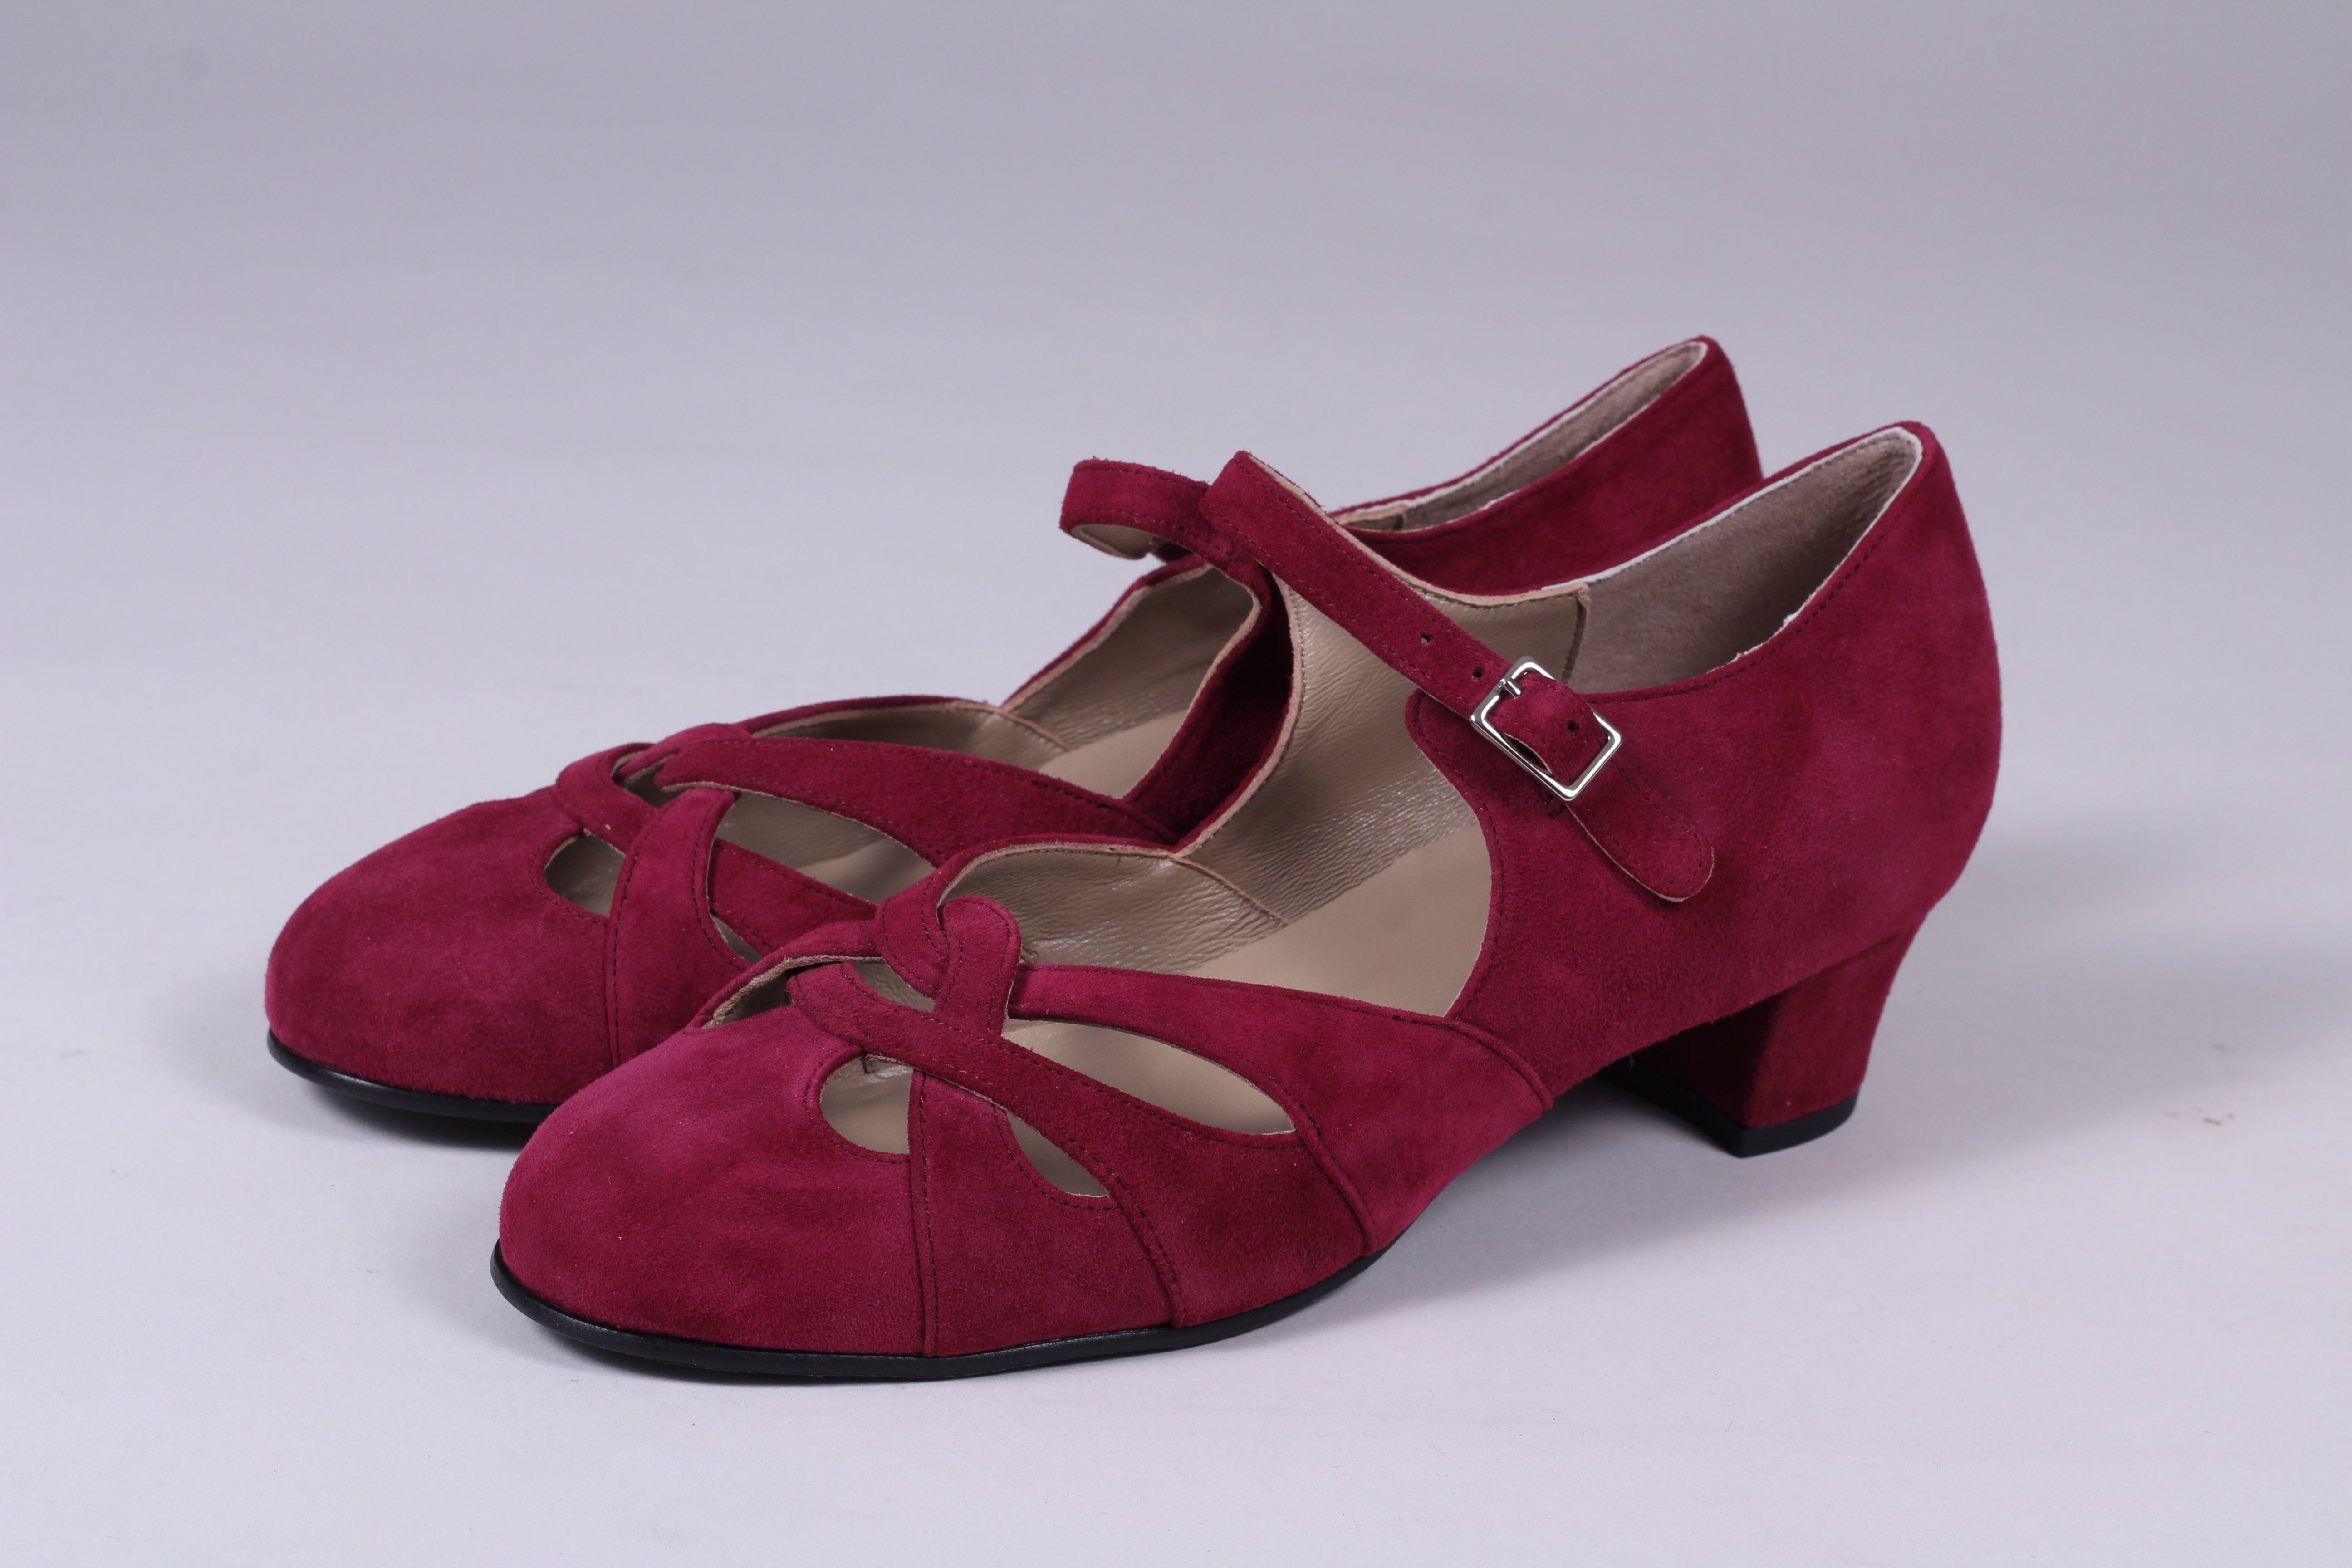 1930'er / 1940'er vintage style sandaler i ruskind - bordeaux rød - Ida